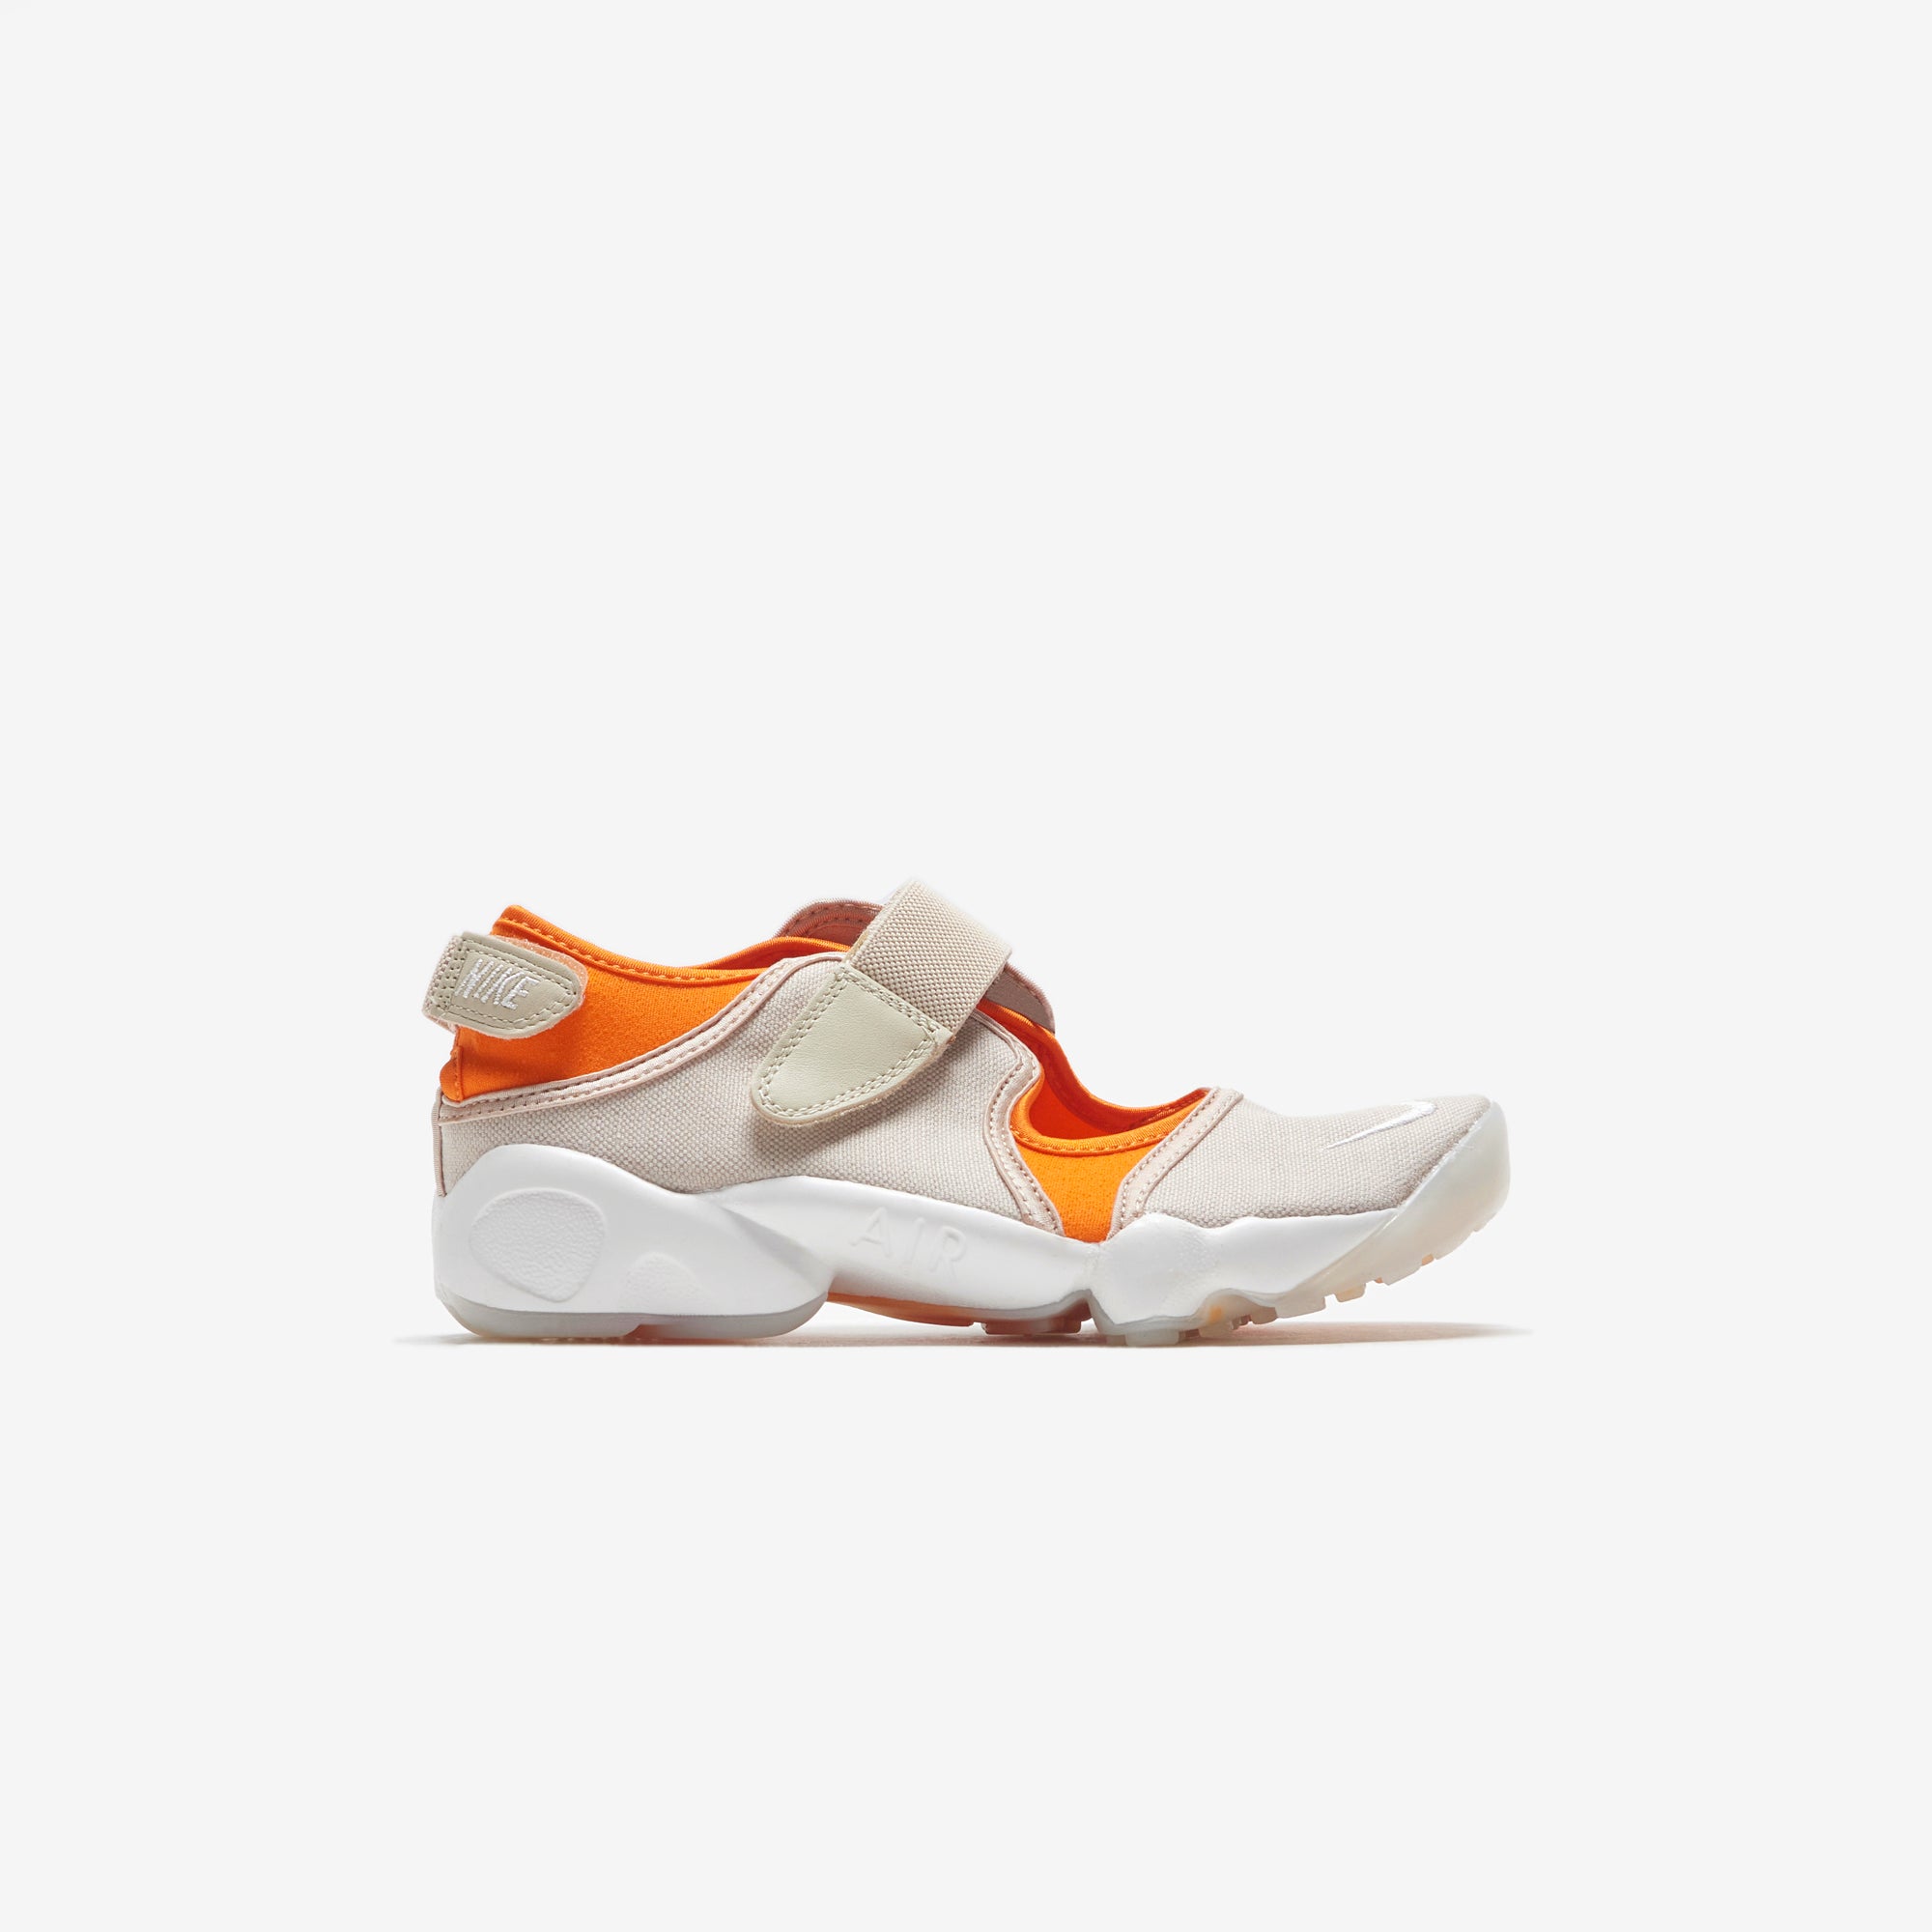 Nike Wmns Air Rift - Rattan / Summit White / Magma Orange – Kith